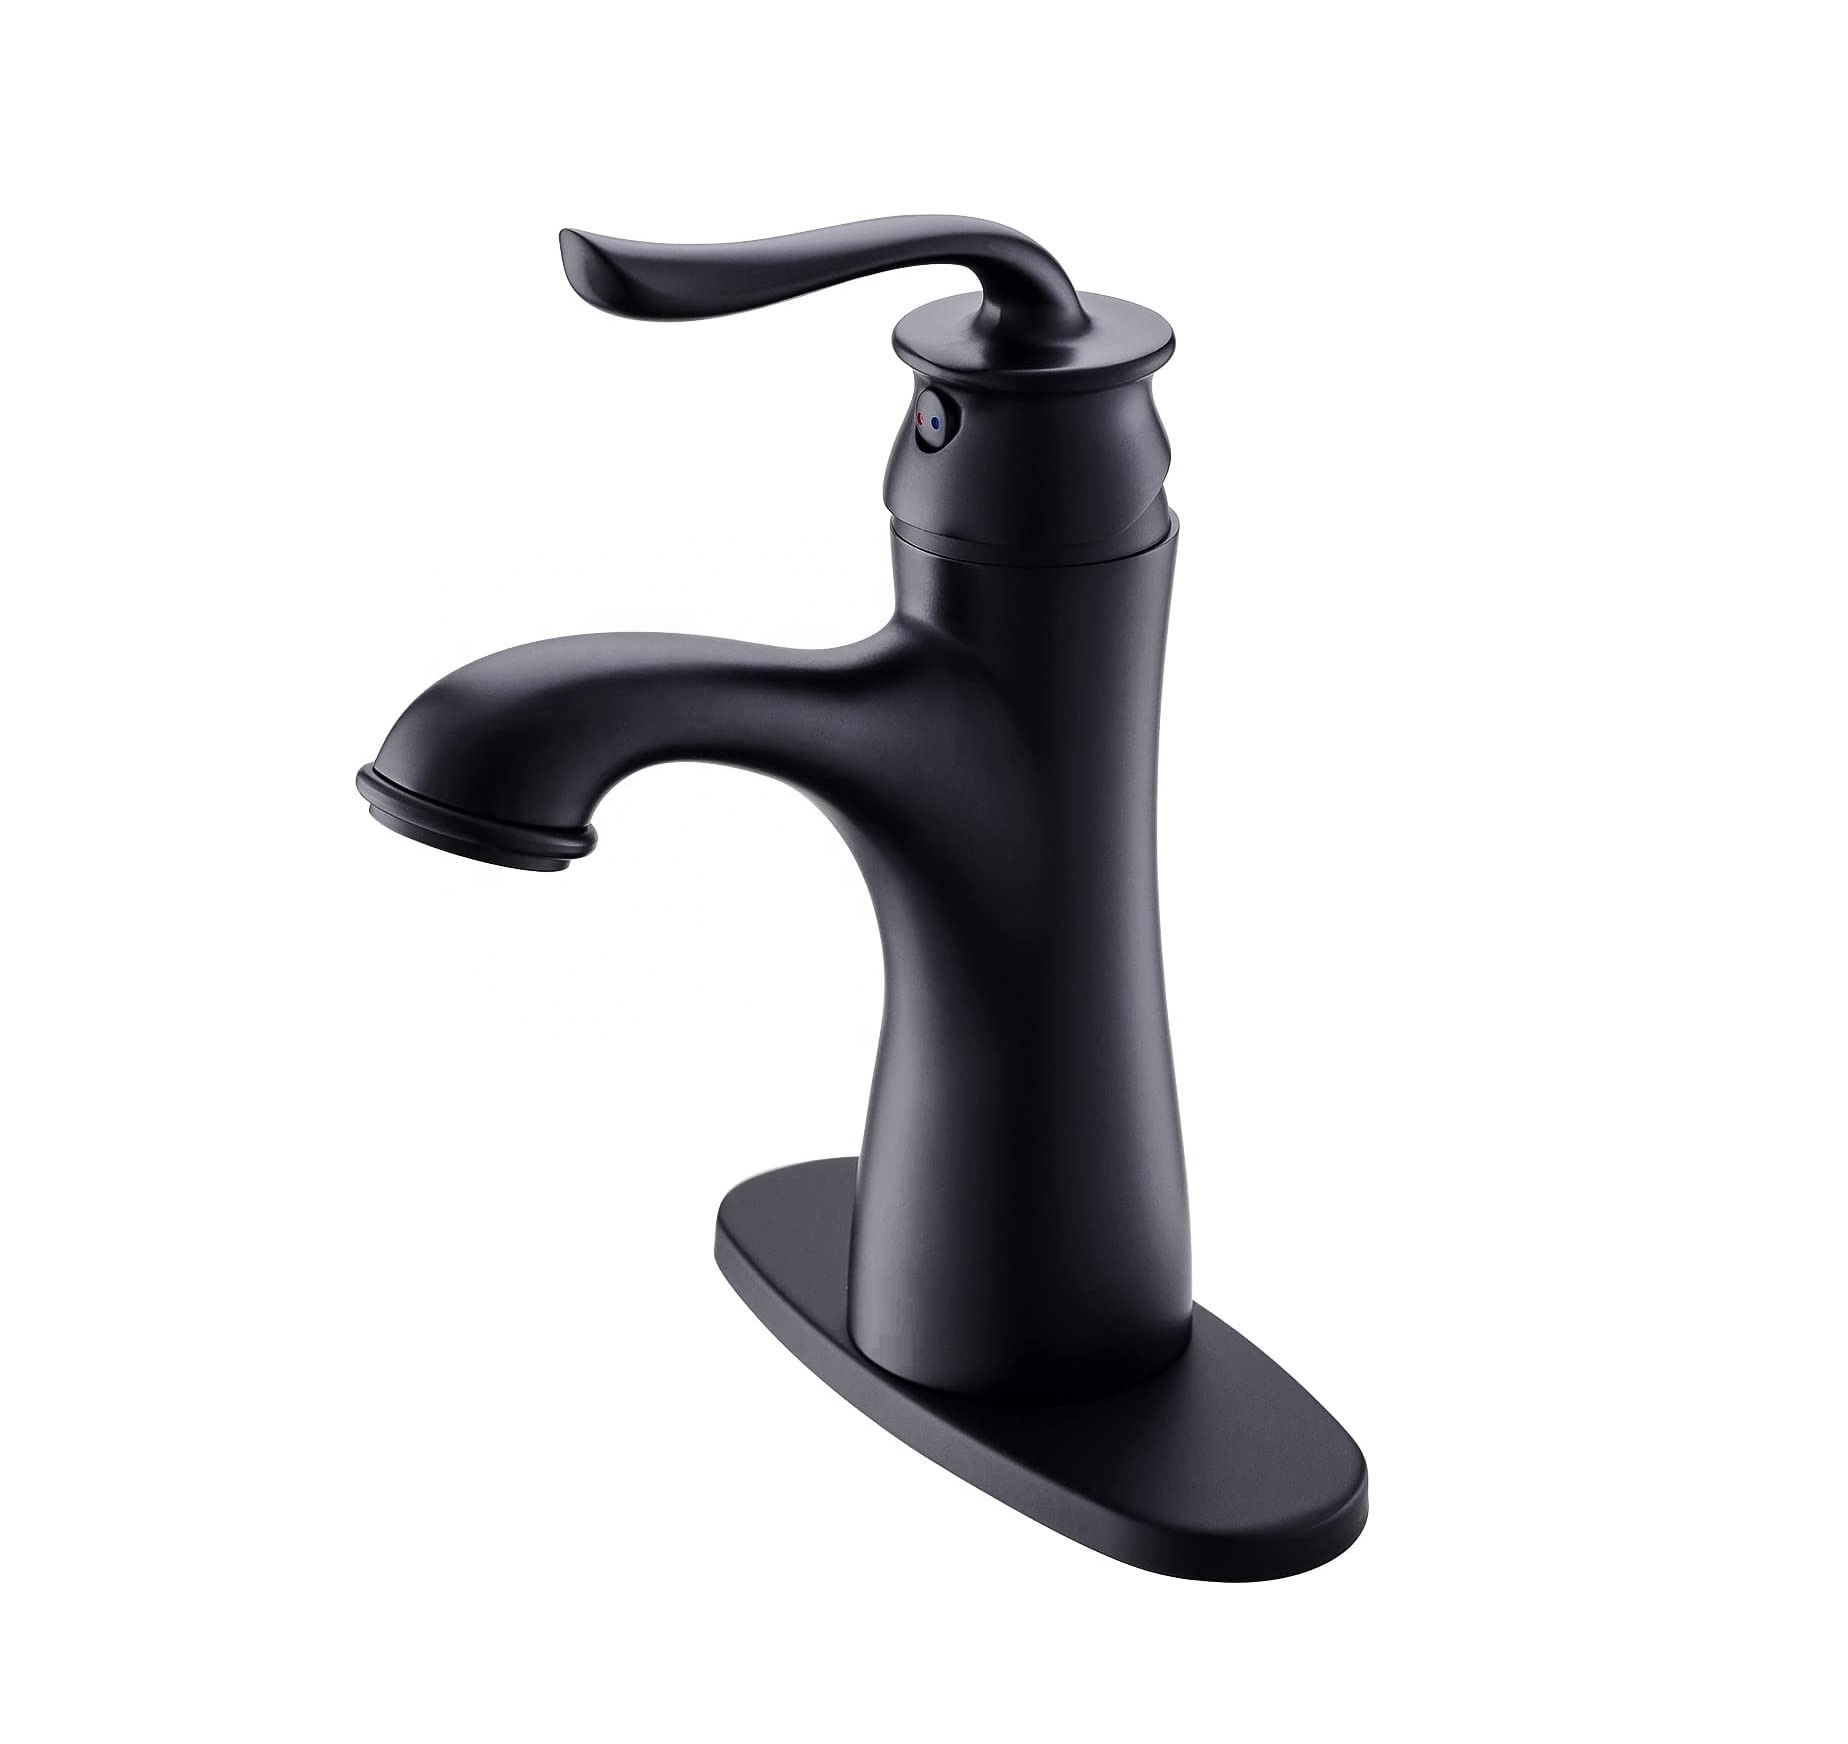 APS165-BN Bathroom Faucet Nickel Hand Wash Basin Faucet Mixer Taps Bathroom Faucets